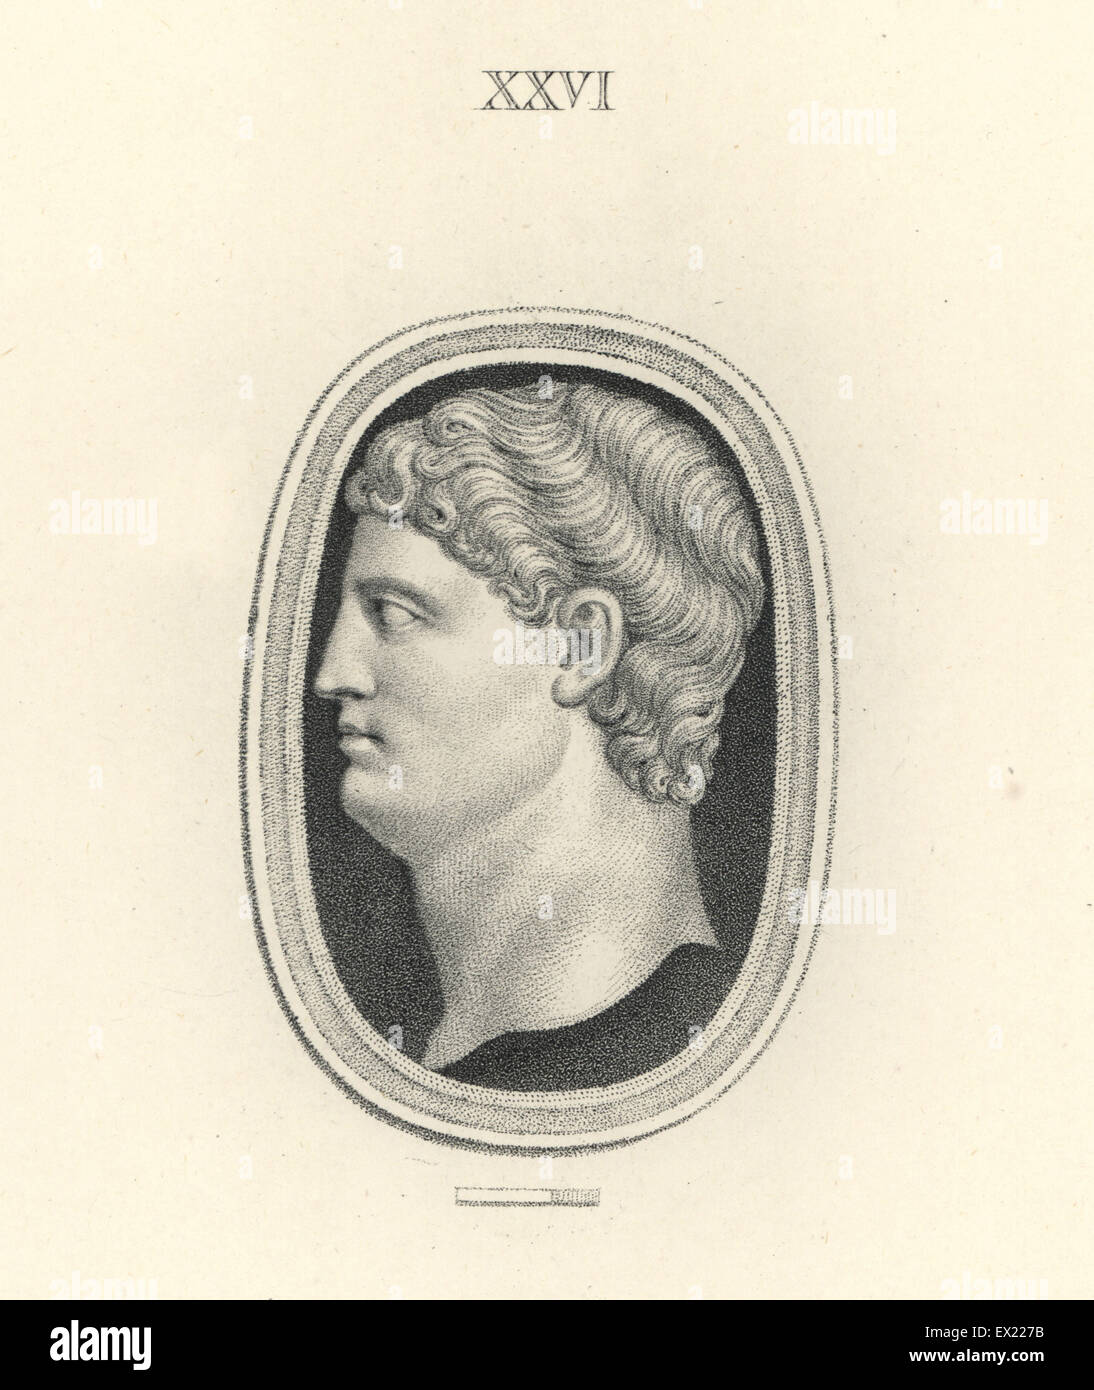 Drusus, fils de général romain Germanicus. La gravure sur cuivre par Francesco Bartolozzi à partir de 108 plaques de pierres antiques, 1860. Les pierres étaient de la collection du duc de Marlborough. Banque D'Images